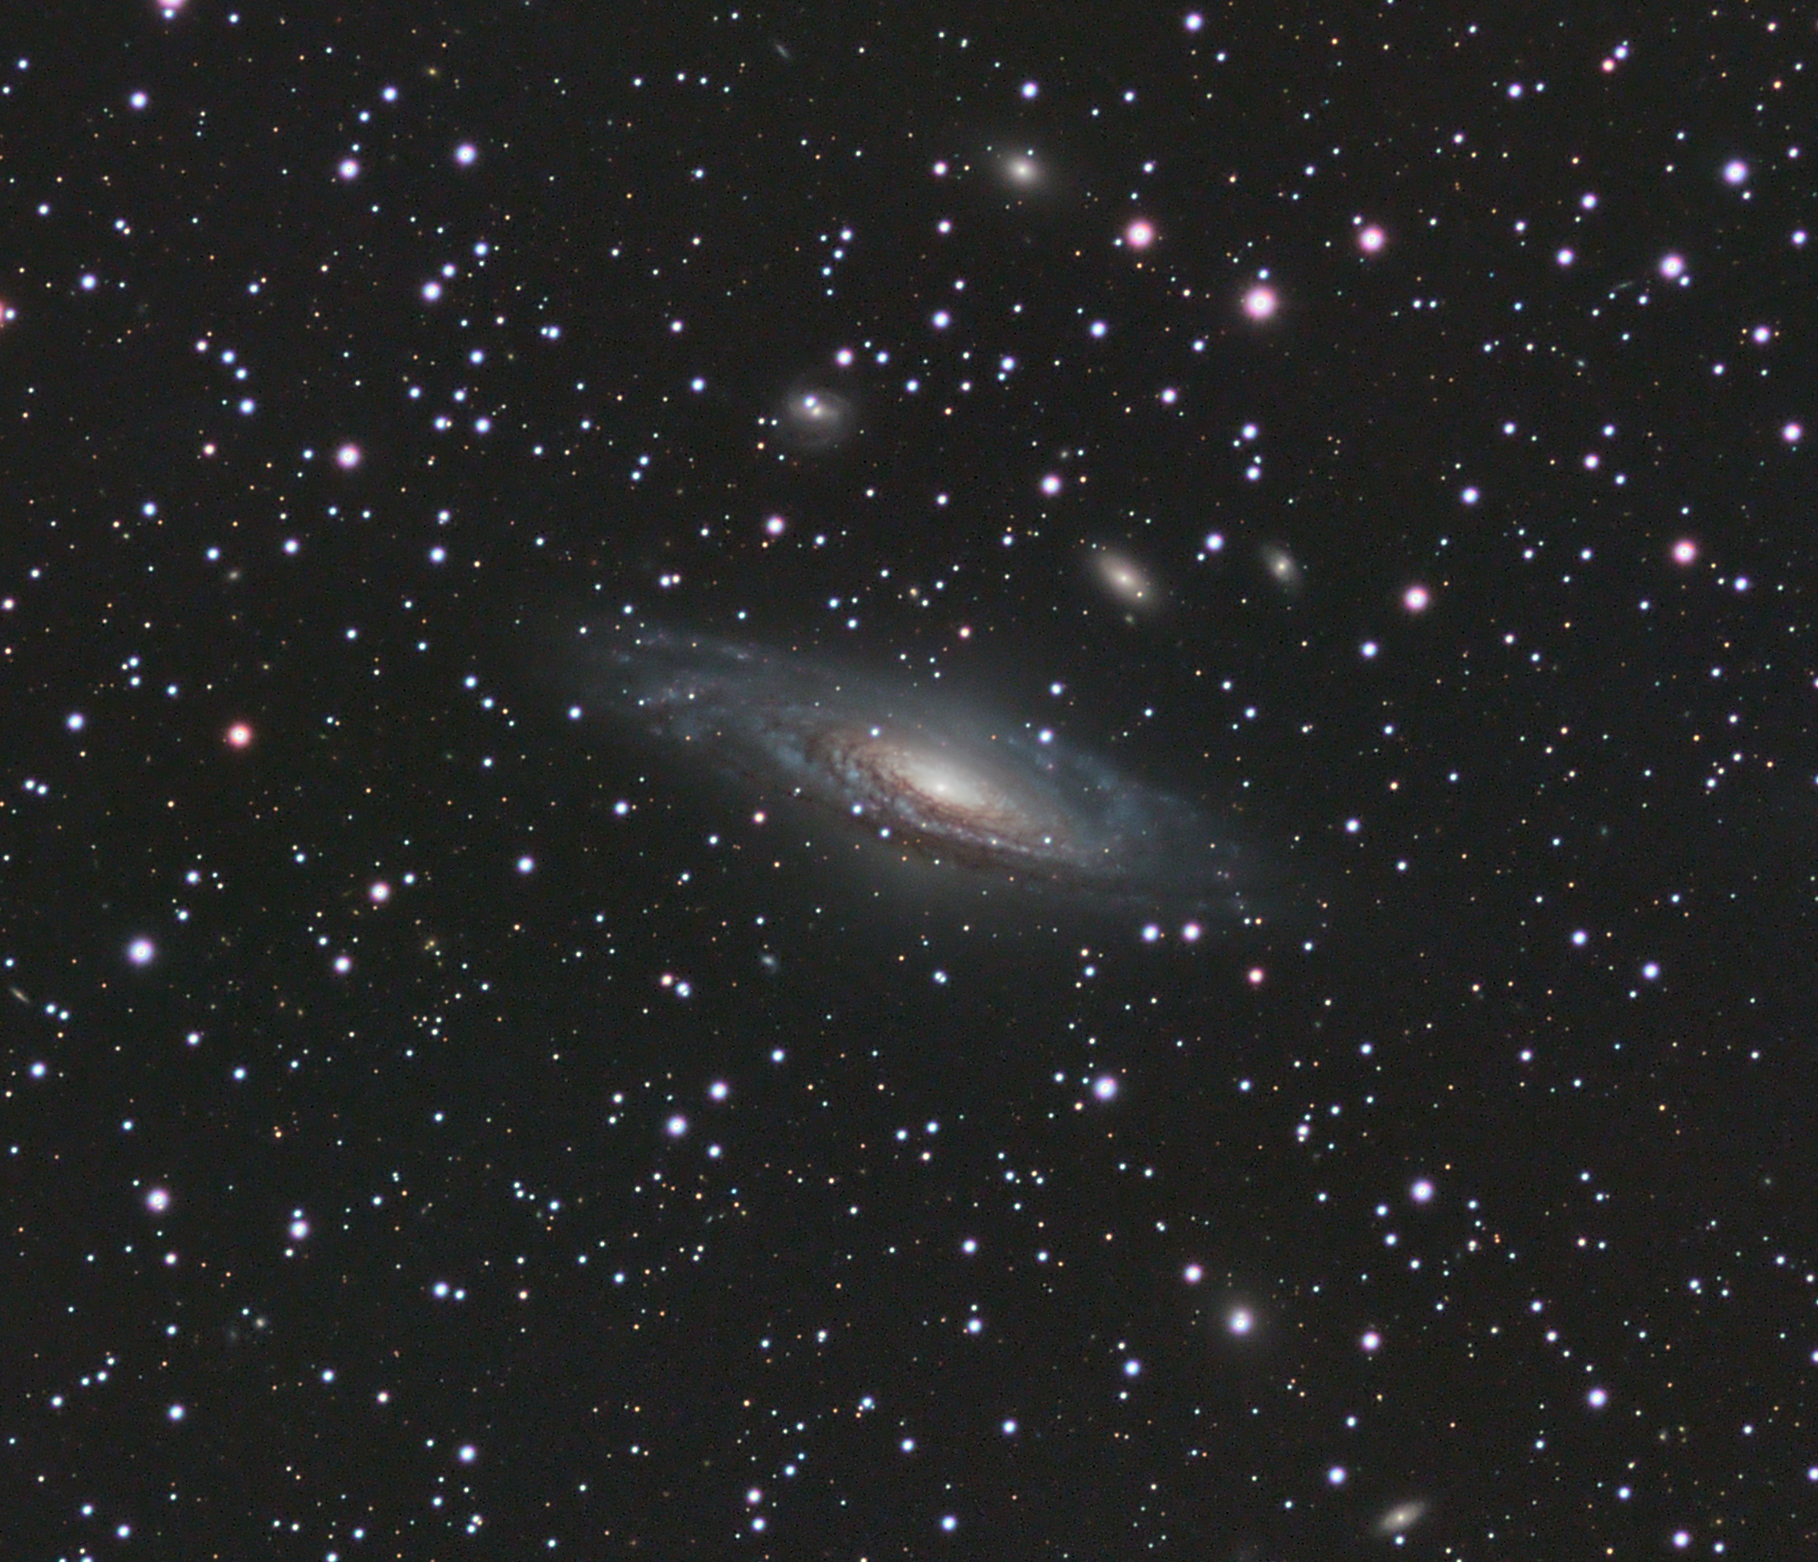 NGC_7331